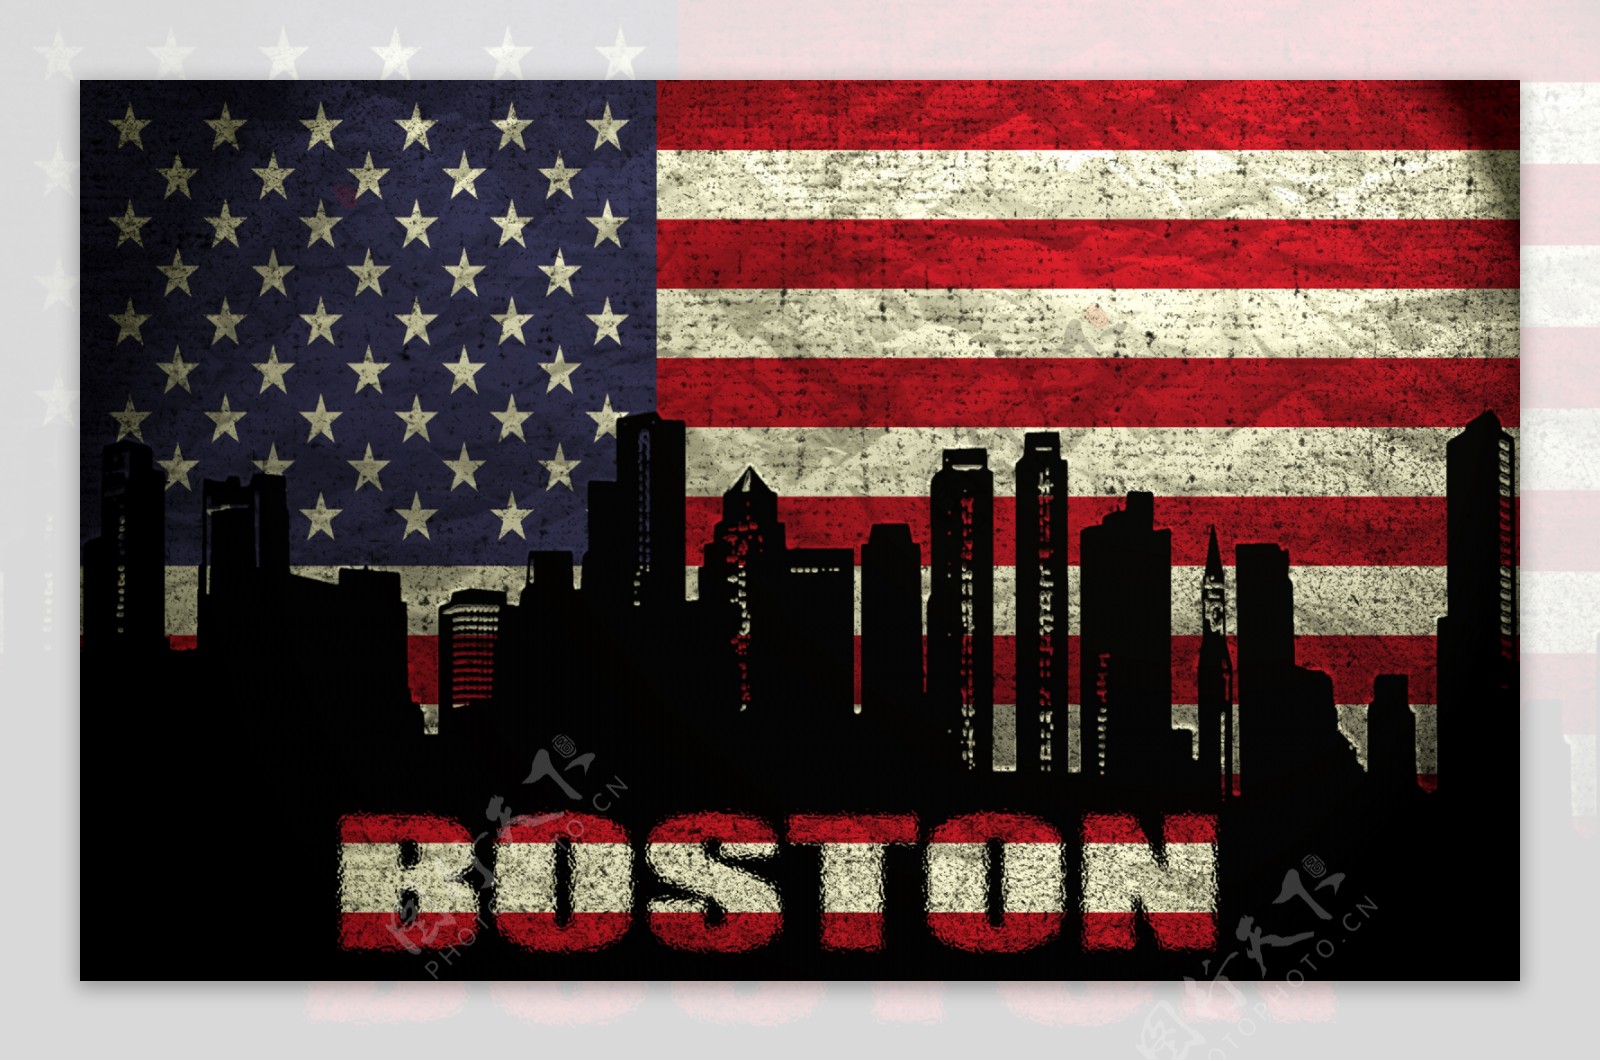 美国国旗与波士顿图片